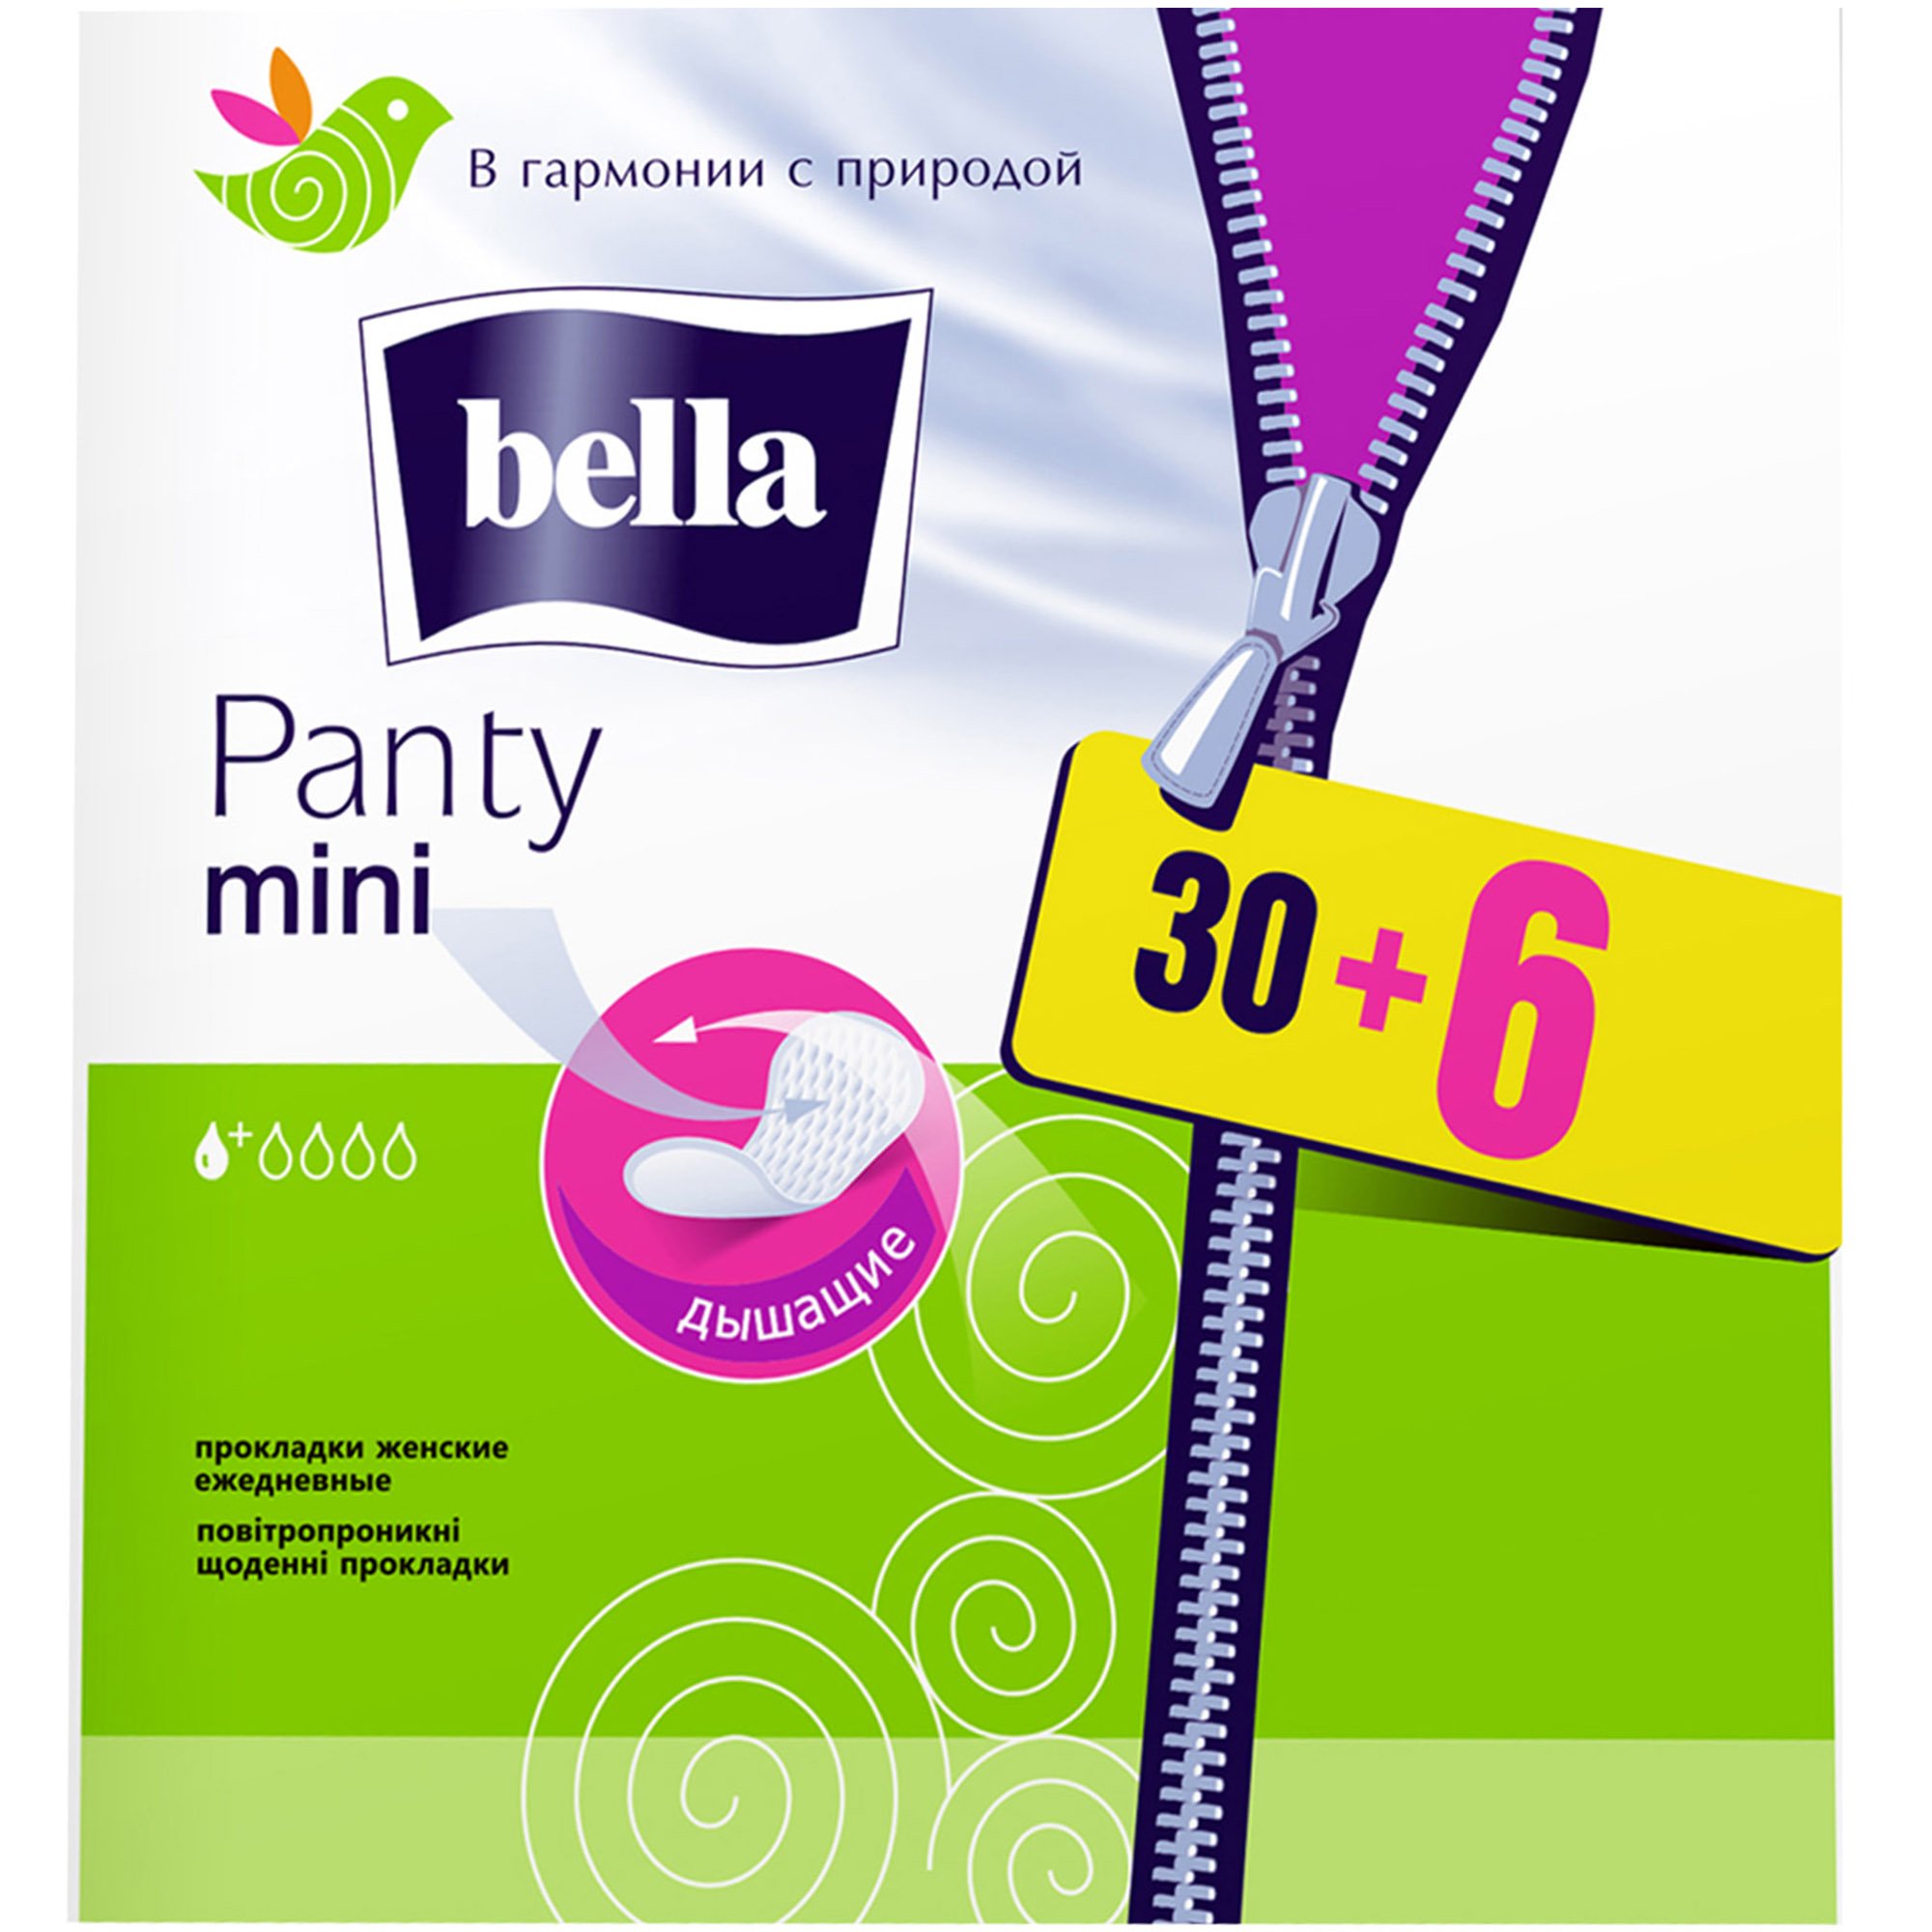 Щоденні прокладки Bella Panty Mini 36 шт. - фото 1